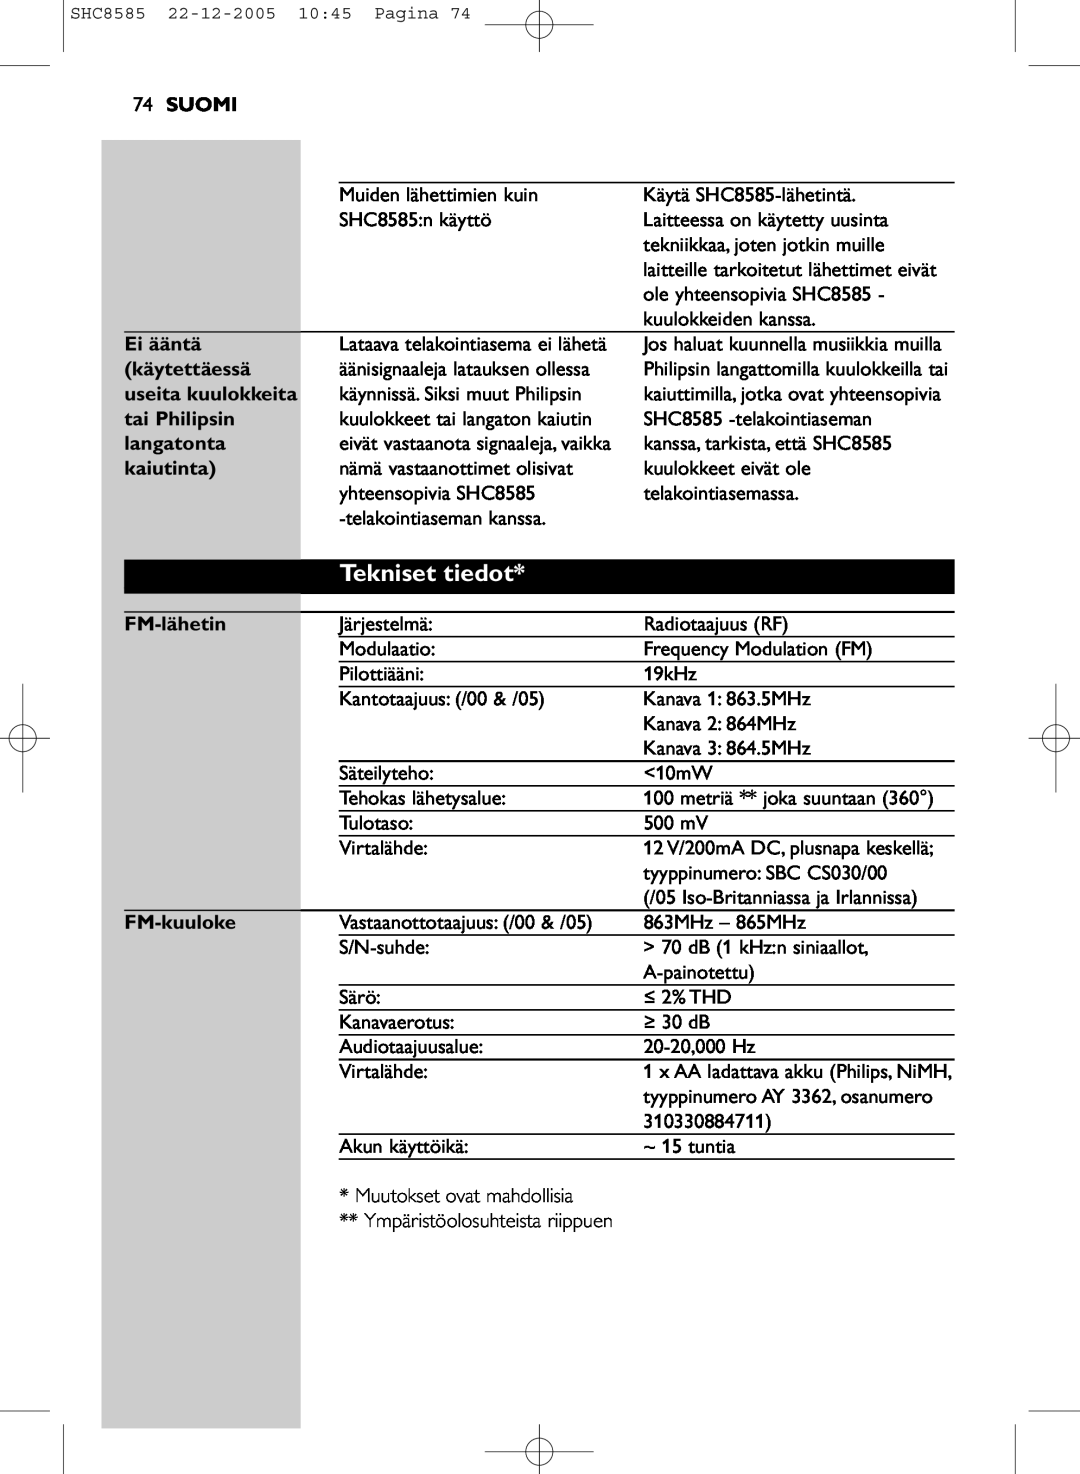 Philips SHC8585/05 manual Tekniset tiedot, Suomi, Ei ääntä, käytettäessä, useita kuulokkeita, tai Philipsin, langatonta 